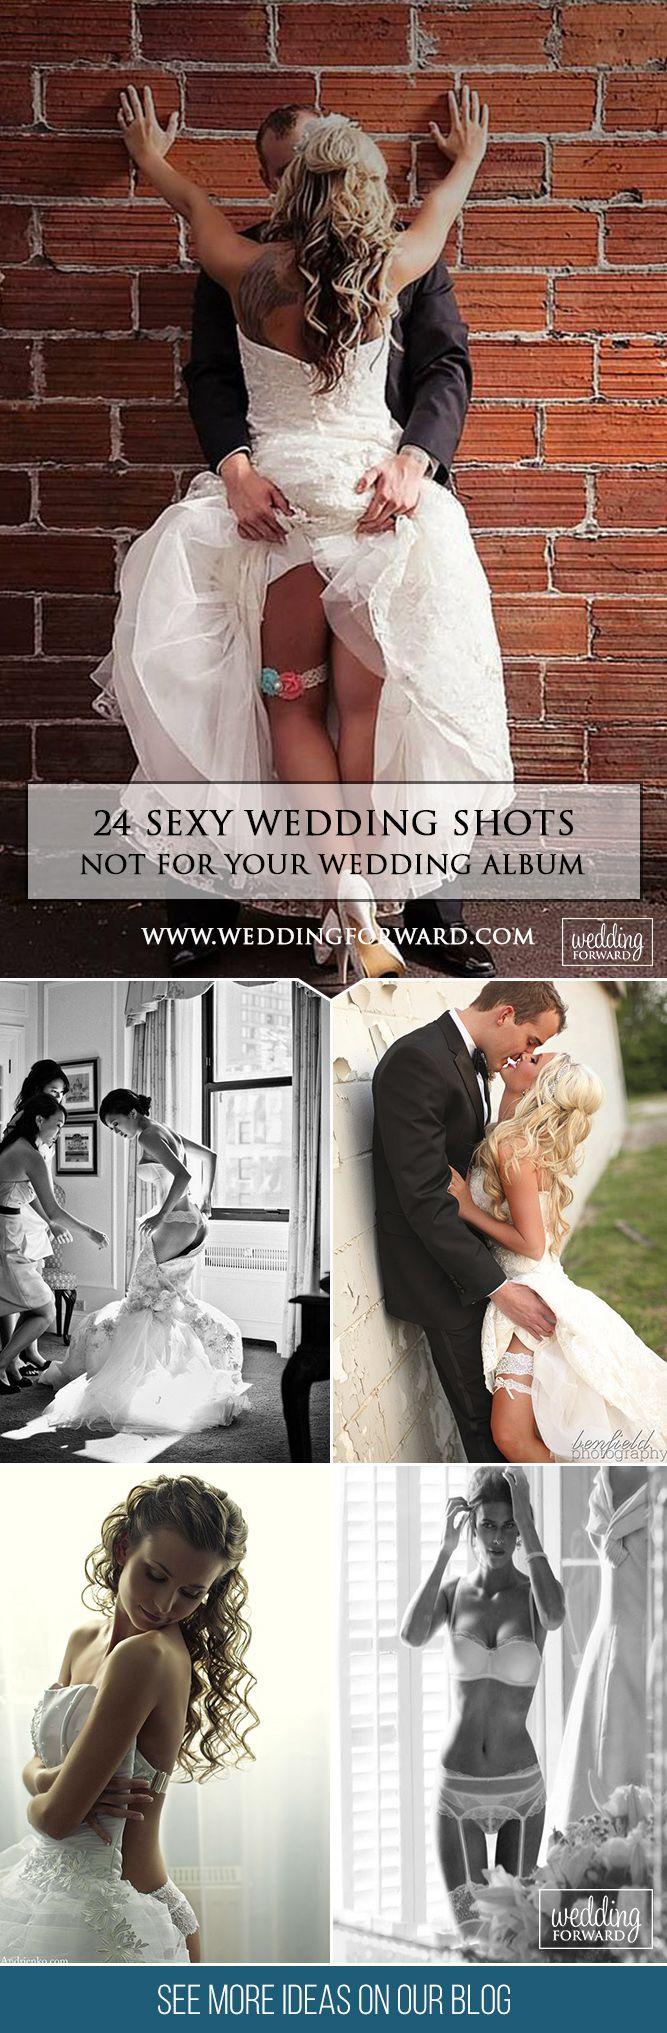 Свадьба - 24 Sexy Wedding Pictures Not For Your Wedding Album